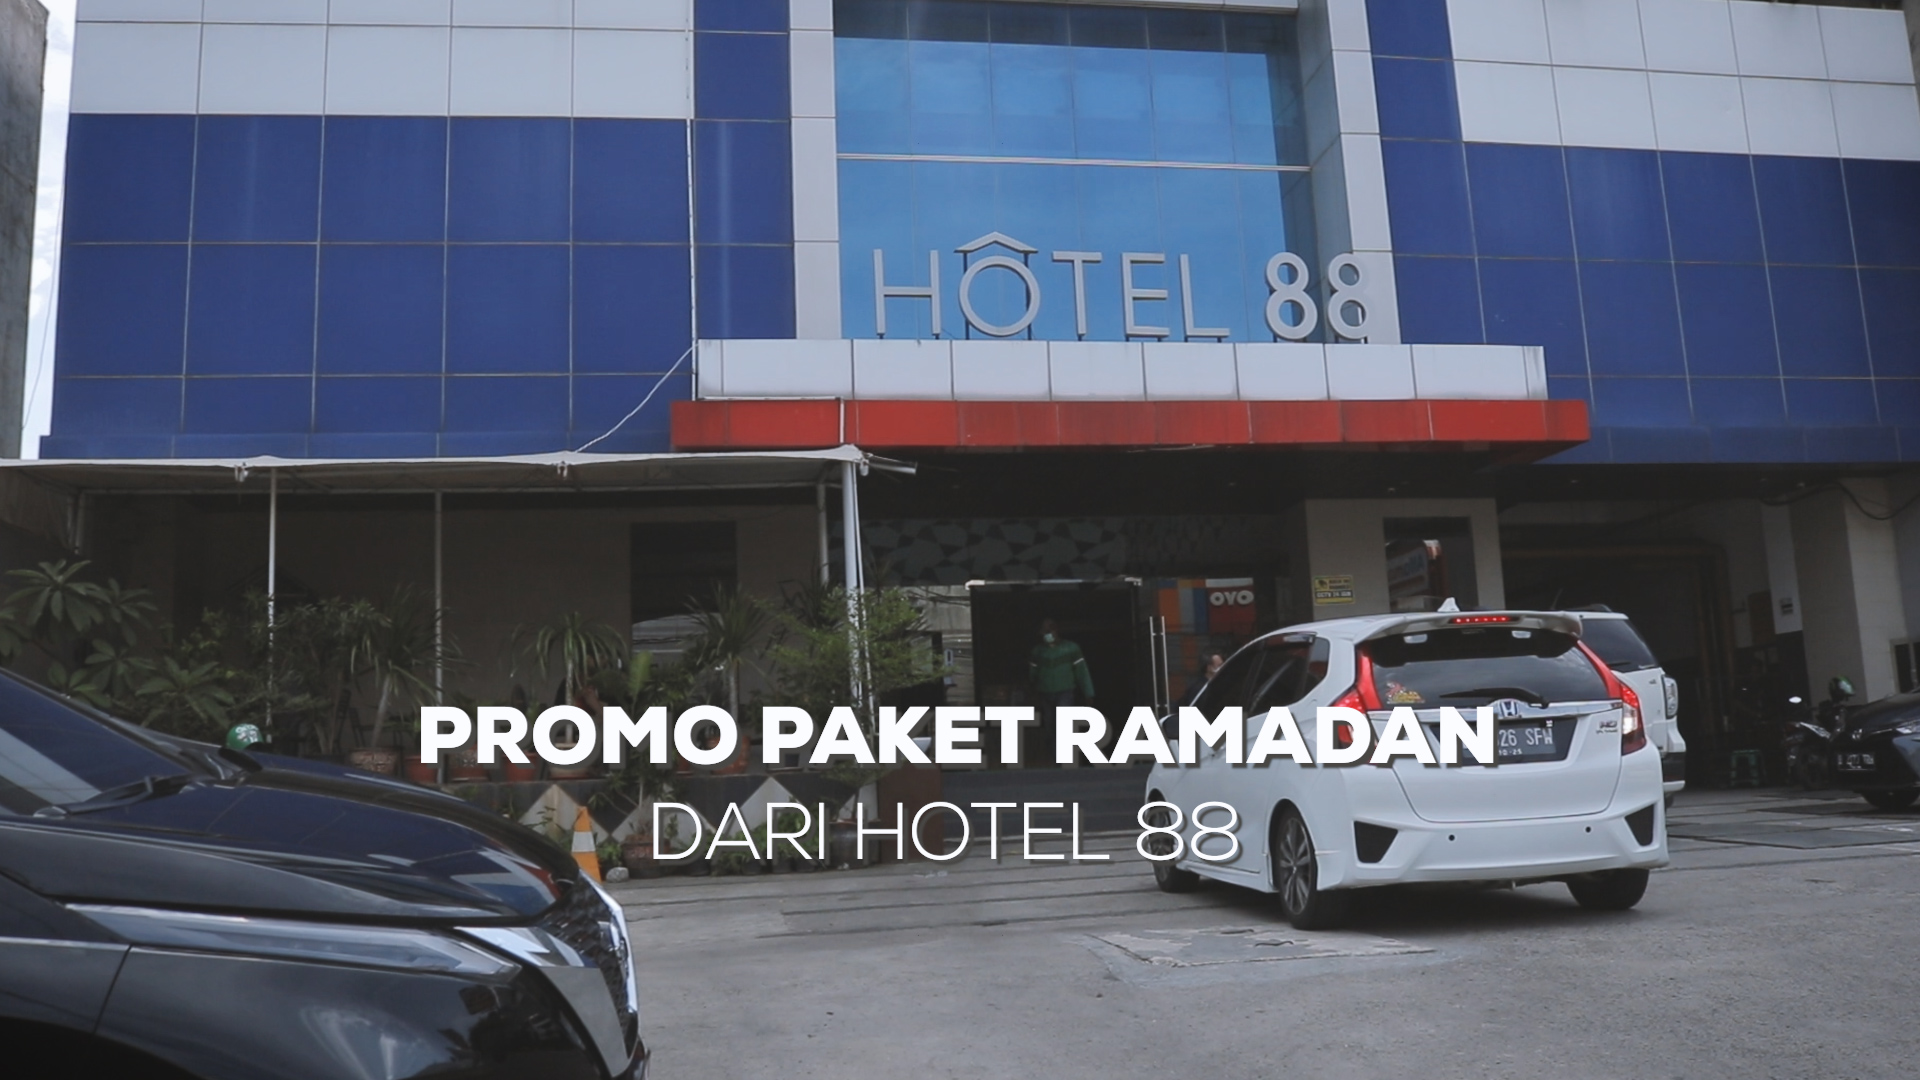 Promo Paket Ramadan dari Hotel 88